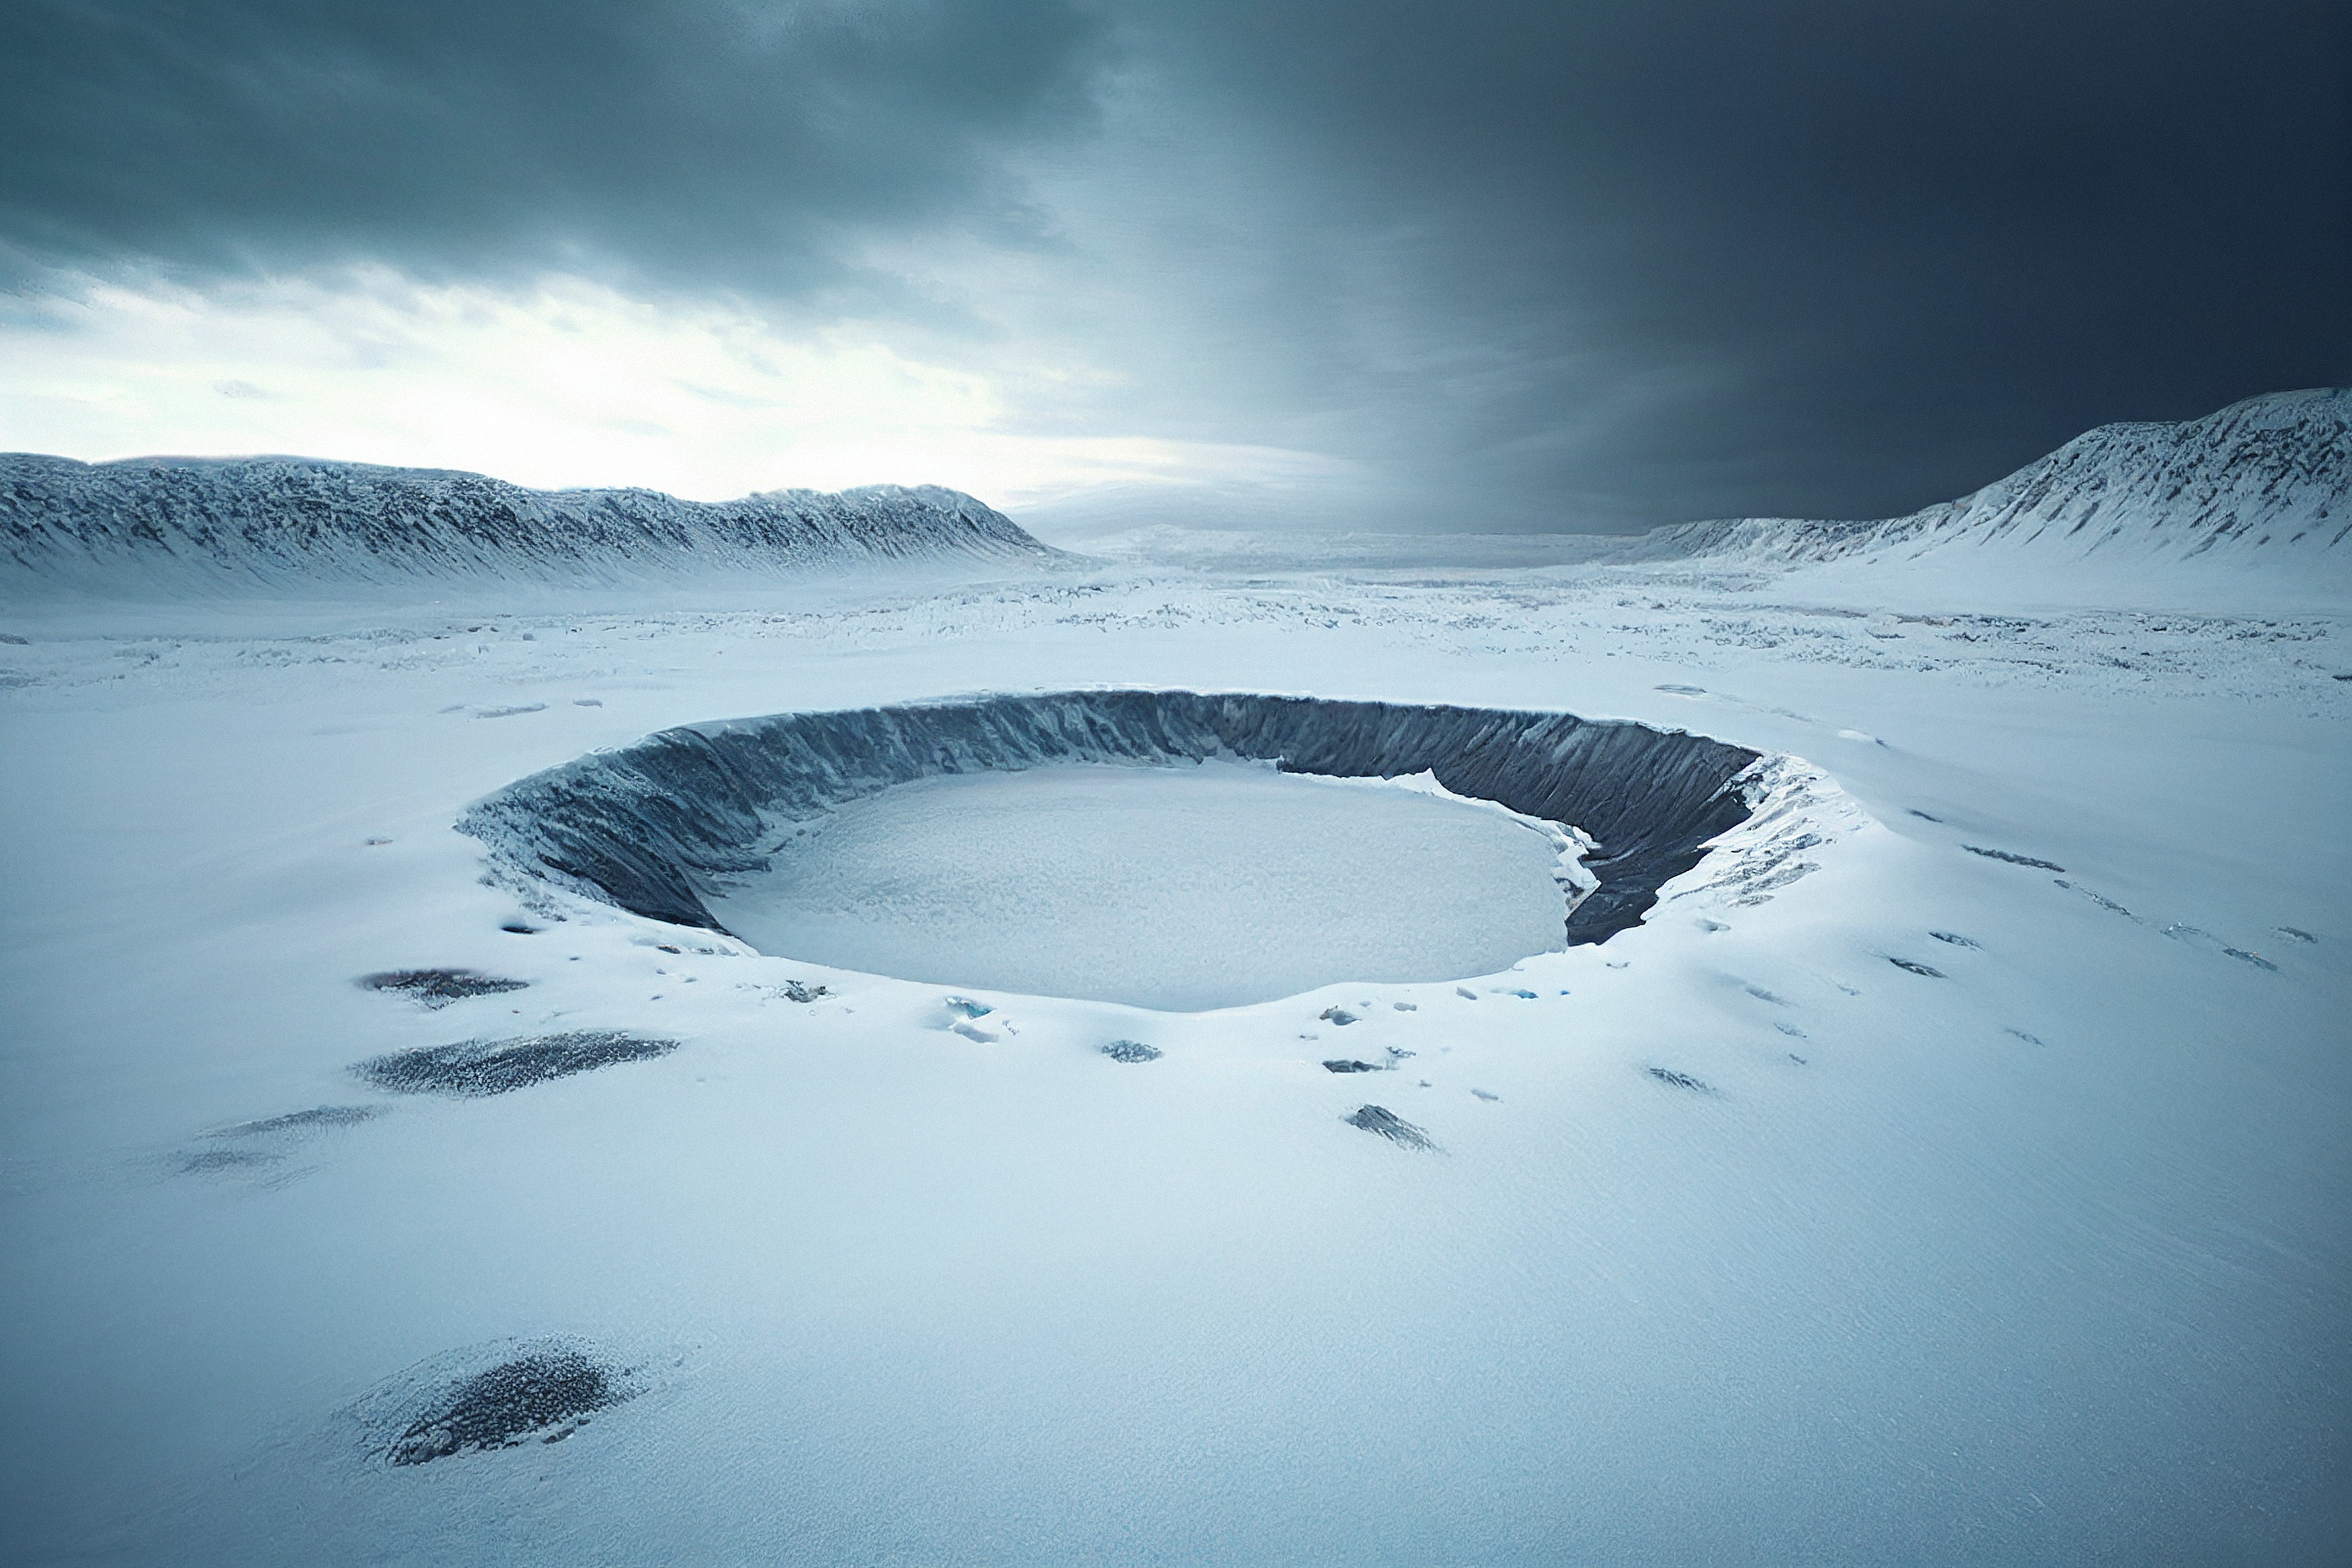 La couleur sombre des météorites réchauffe la glace autour d'elles et les fait s'enfoncer en profondeur. © AI Inspire, Adobe Stock